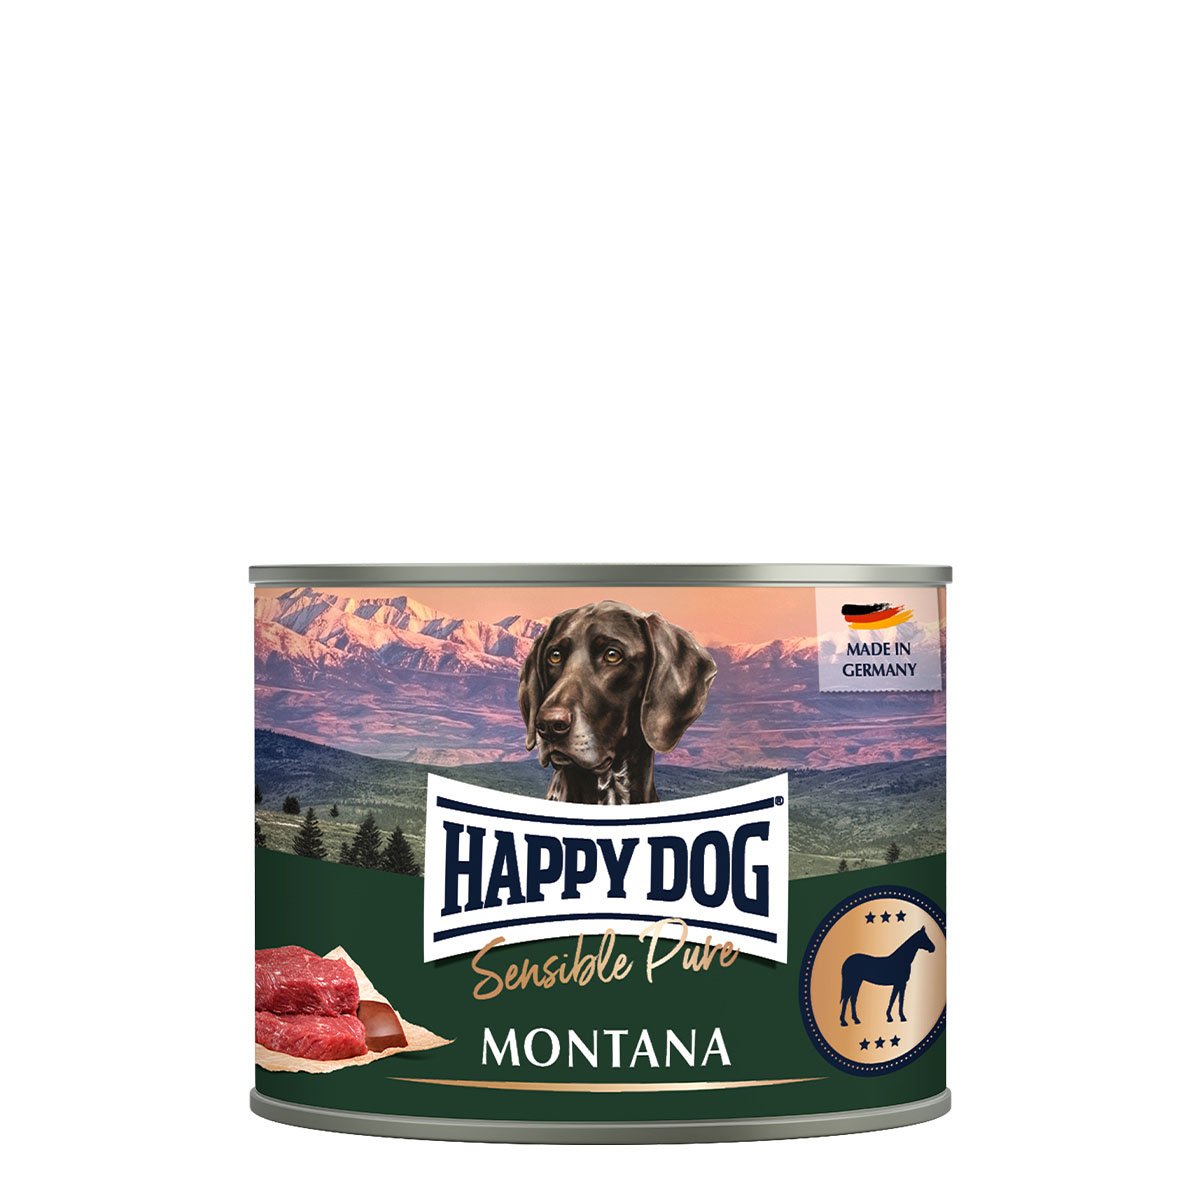 Happy Dog Sensible Pure Montana (Pferd) 6x200g